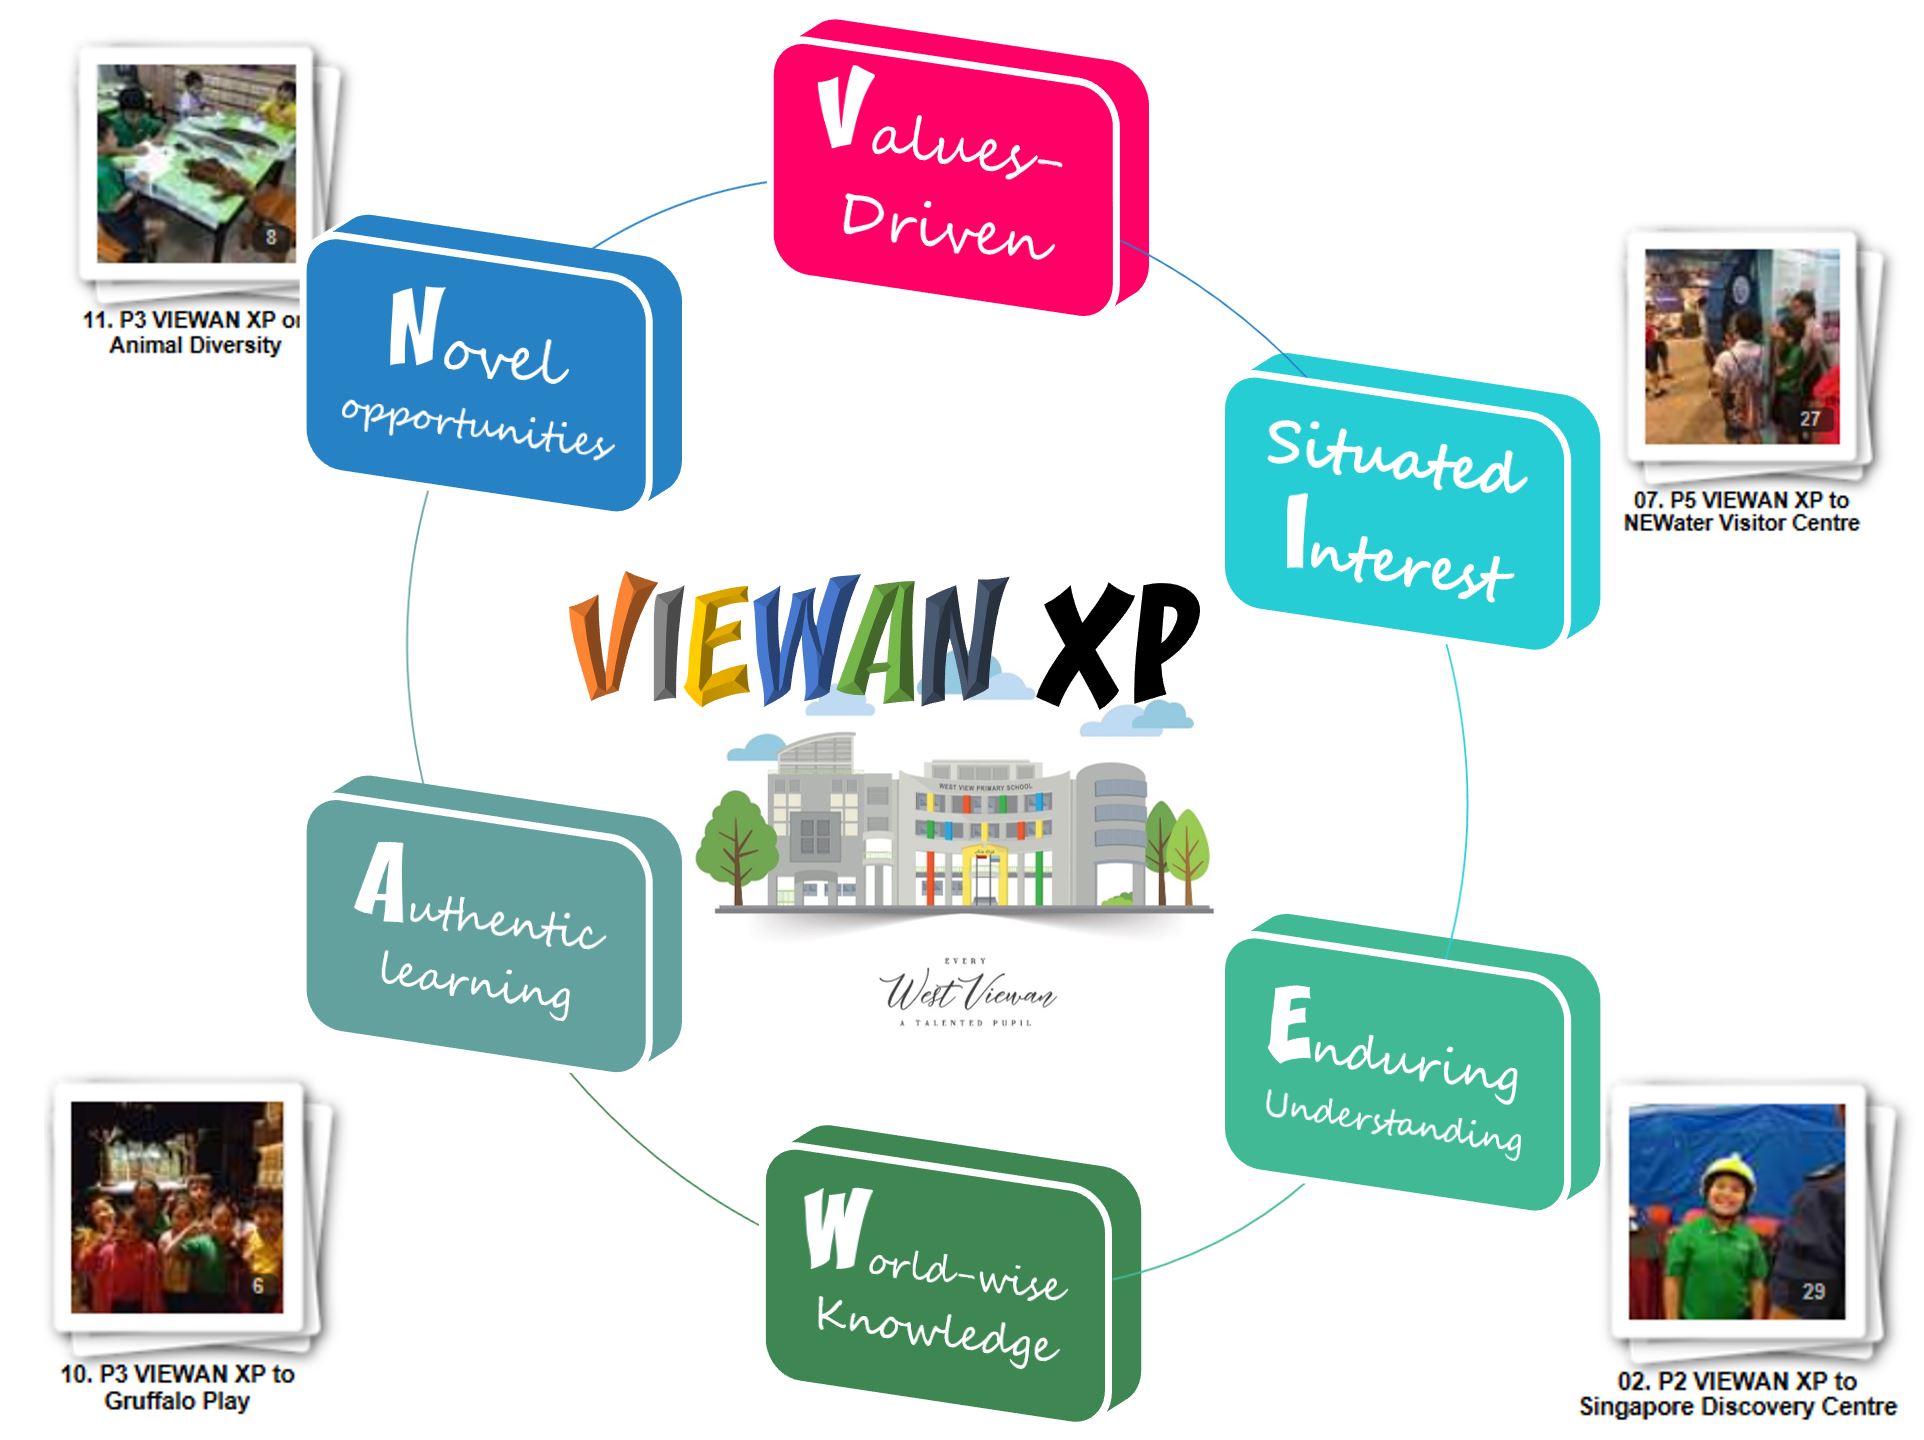 VIEWAN XP